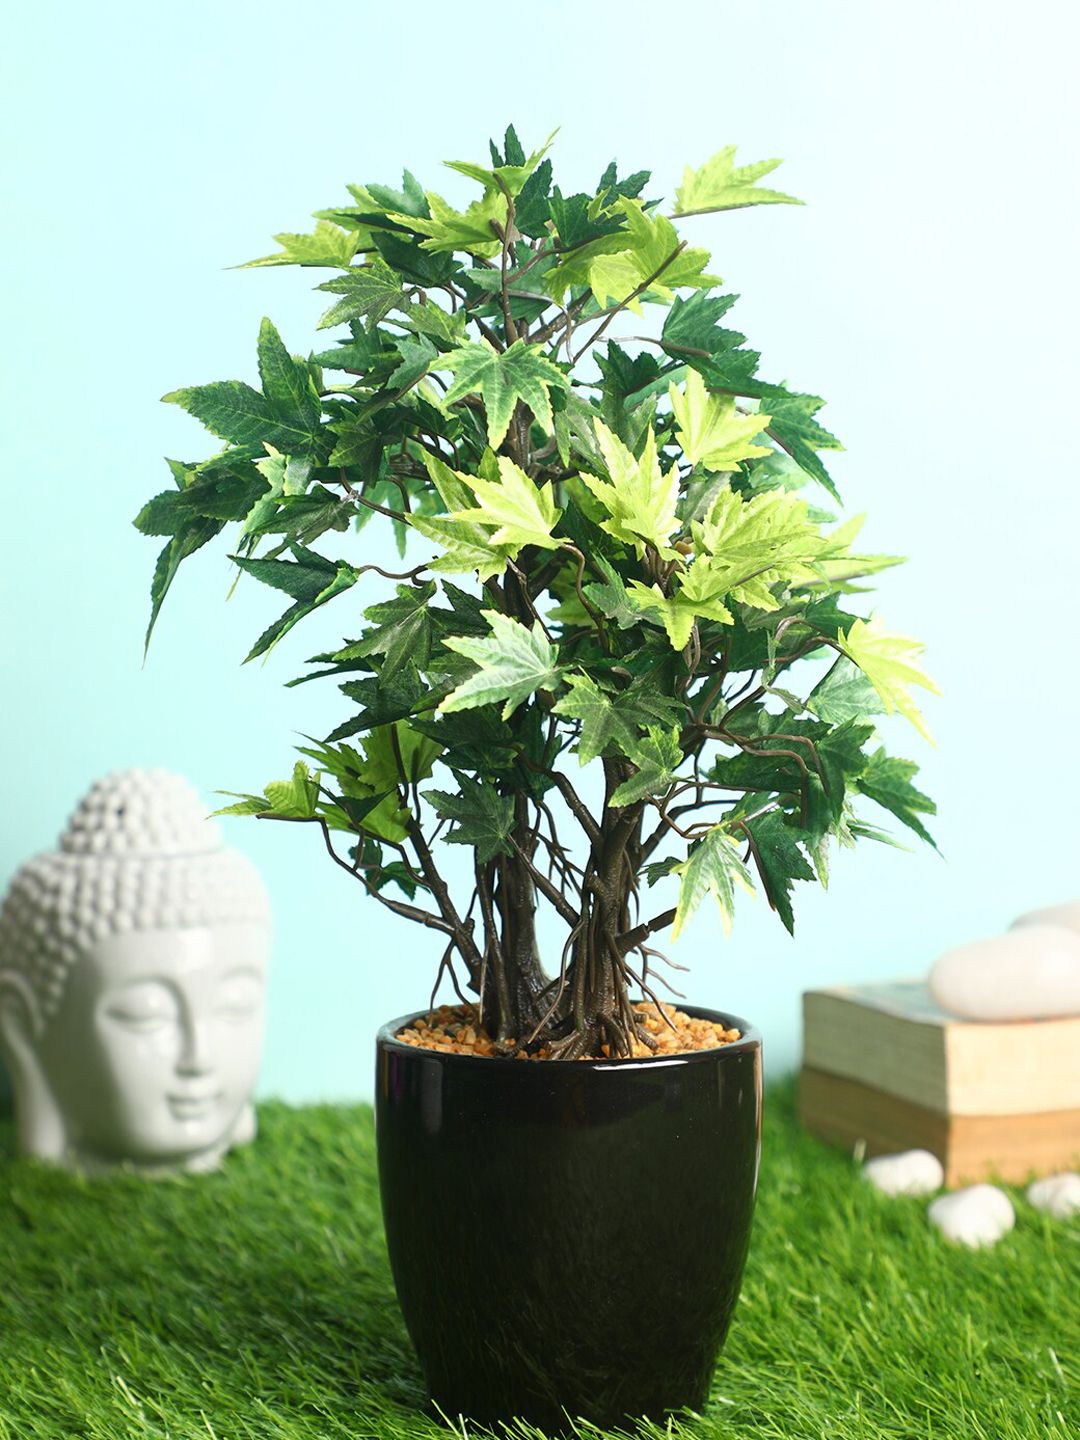 PolliNation Green & Black Decorative Artificial Maple Bonsai with Ceramic Pot Price in India